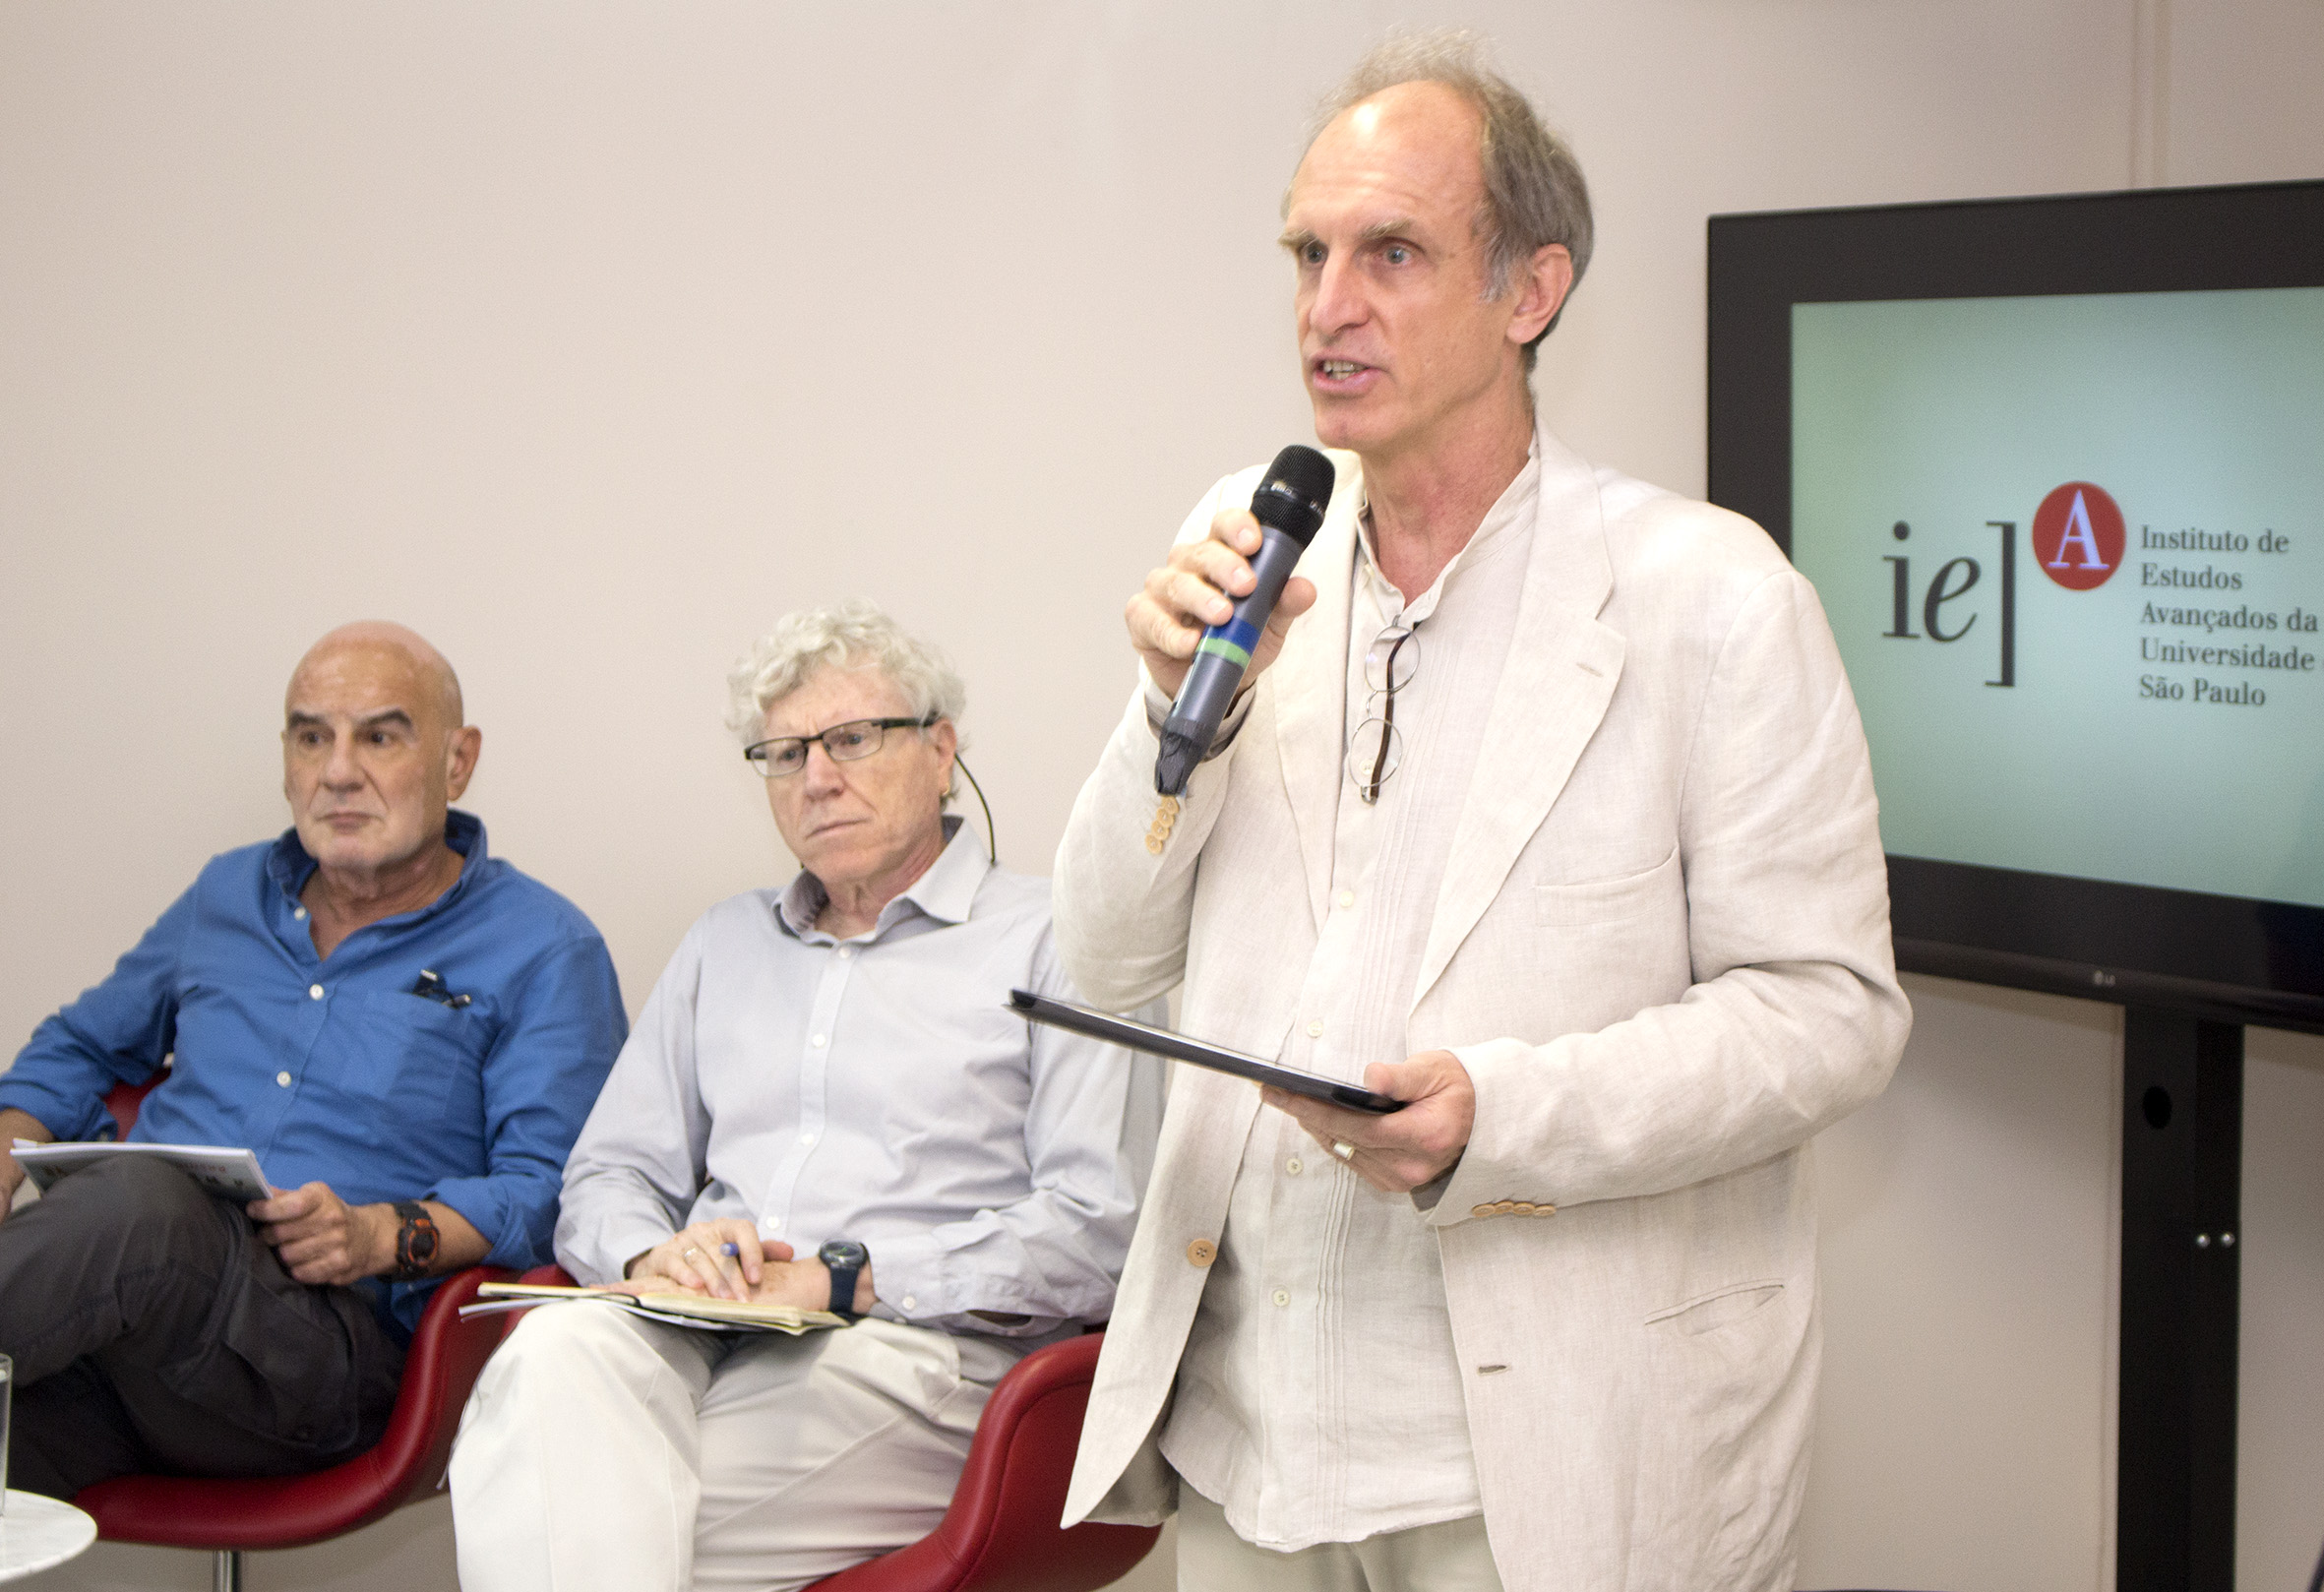 Eduardo Viola, Pedro Jacobi and Martin Grossmann